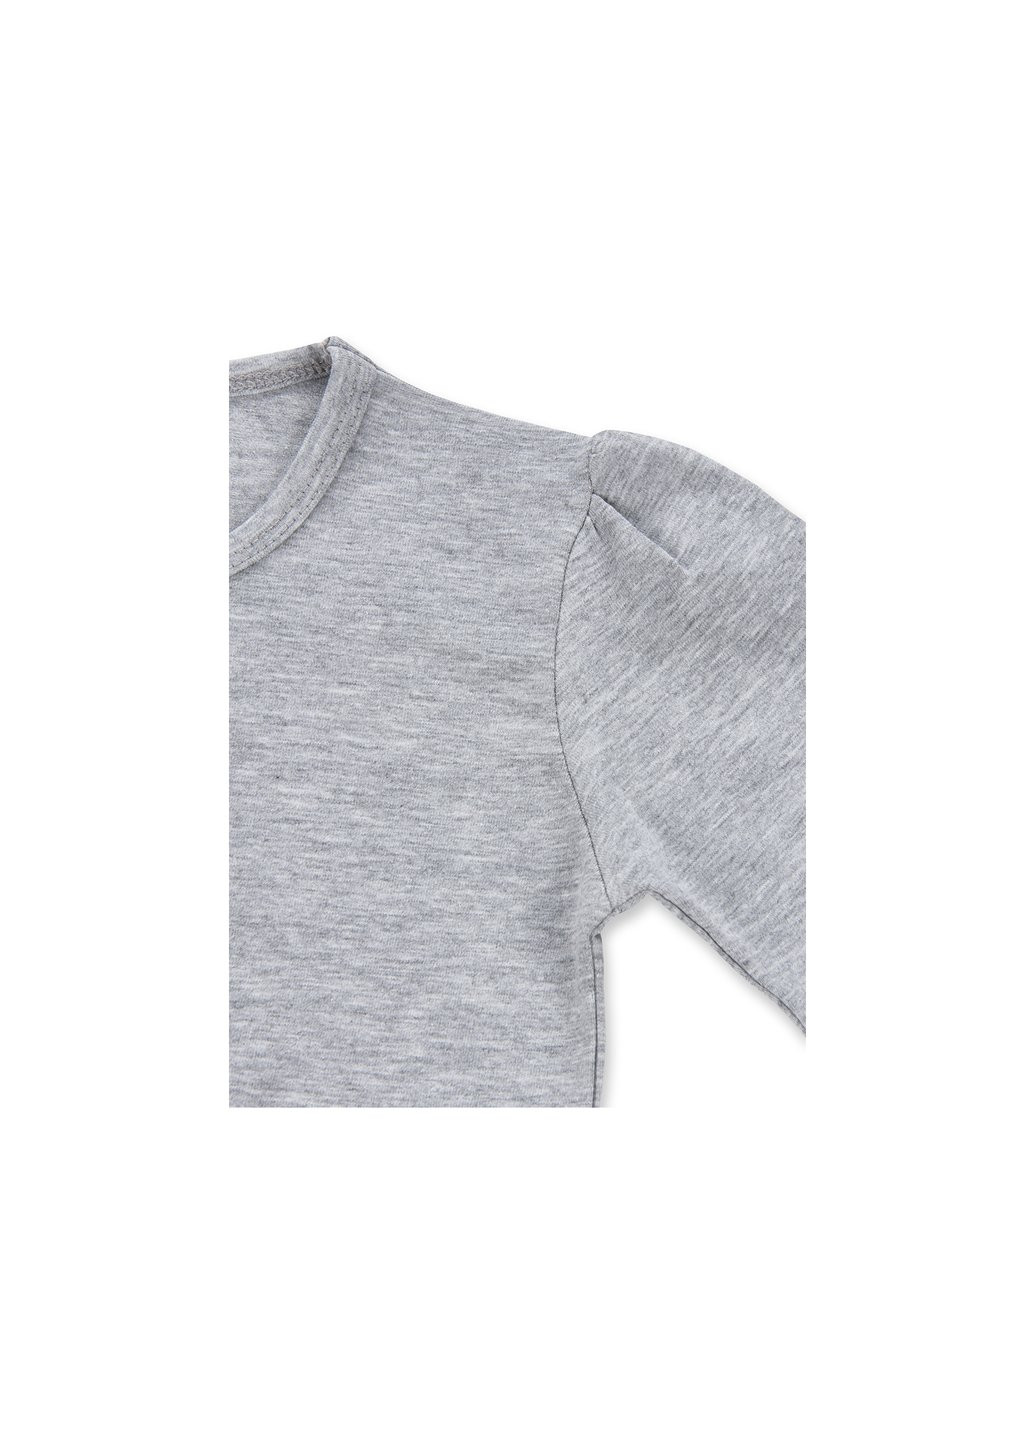 Комбинированный демисезонный набор детской одежды с объемной аппликацией (8401-98g-gray) Breeze